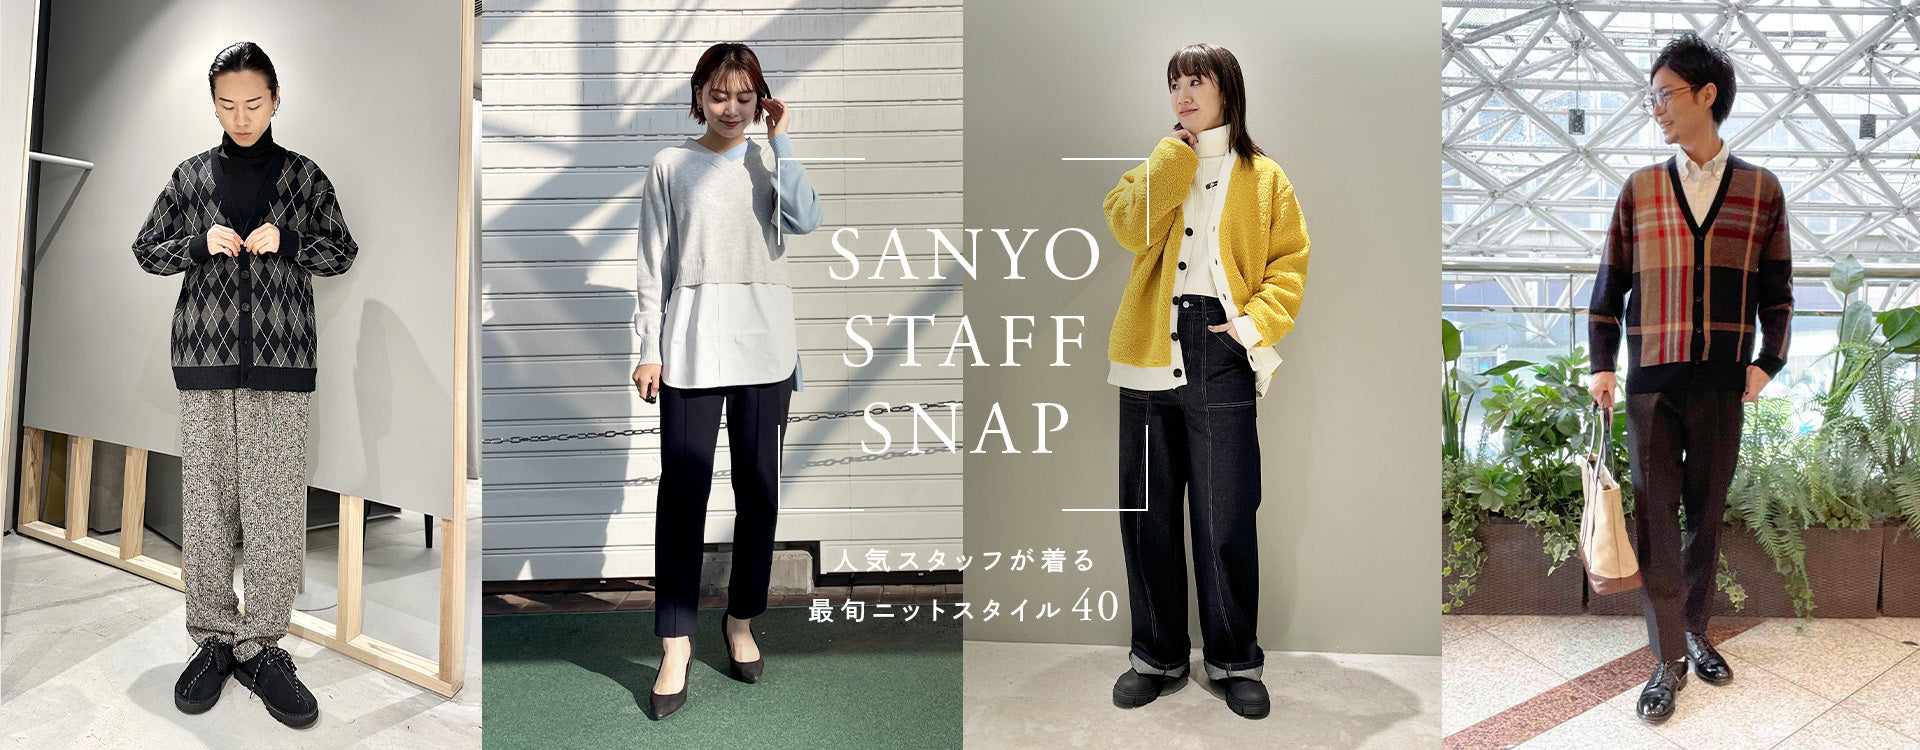 ファッション通販 SANYO ONLINE STORE【公式】｜三陽商会